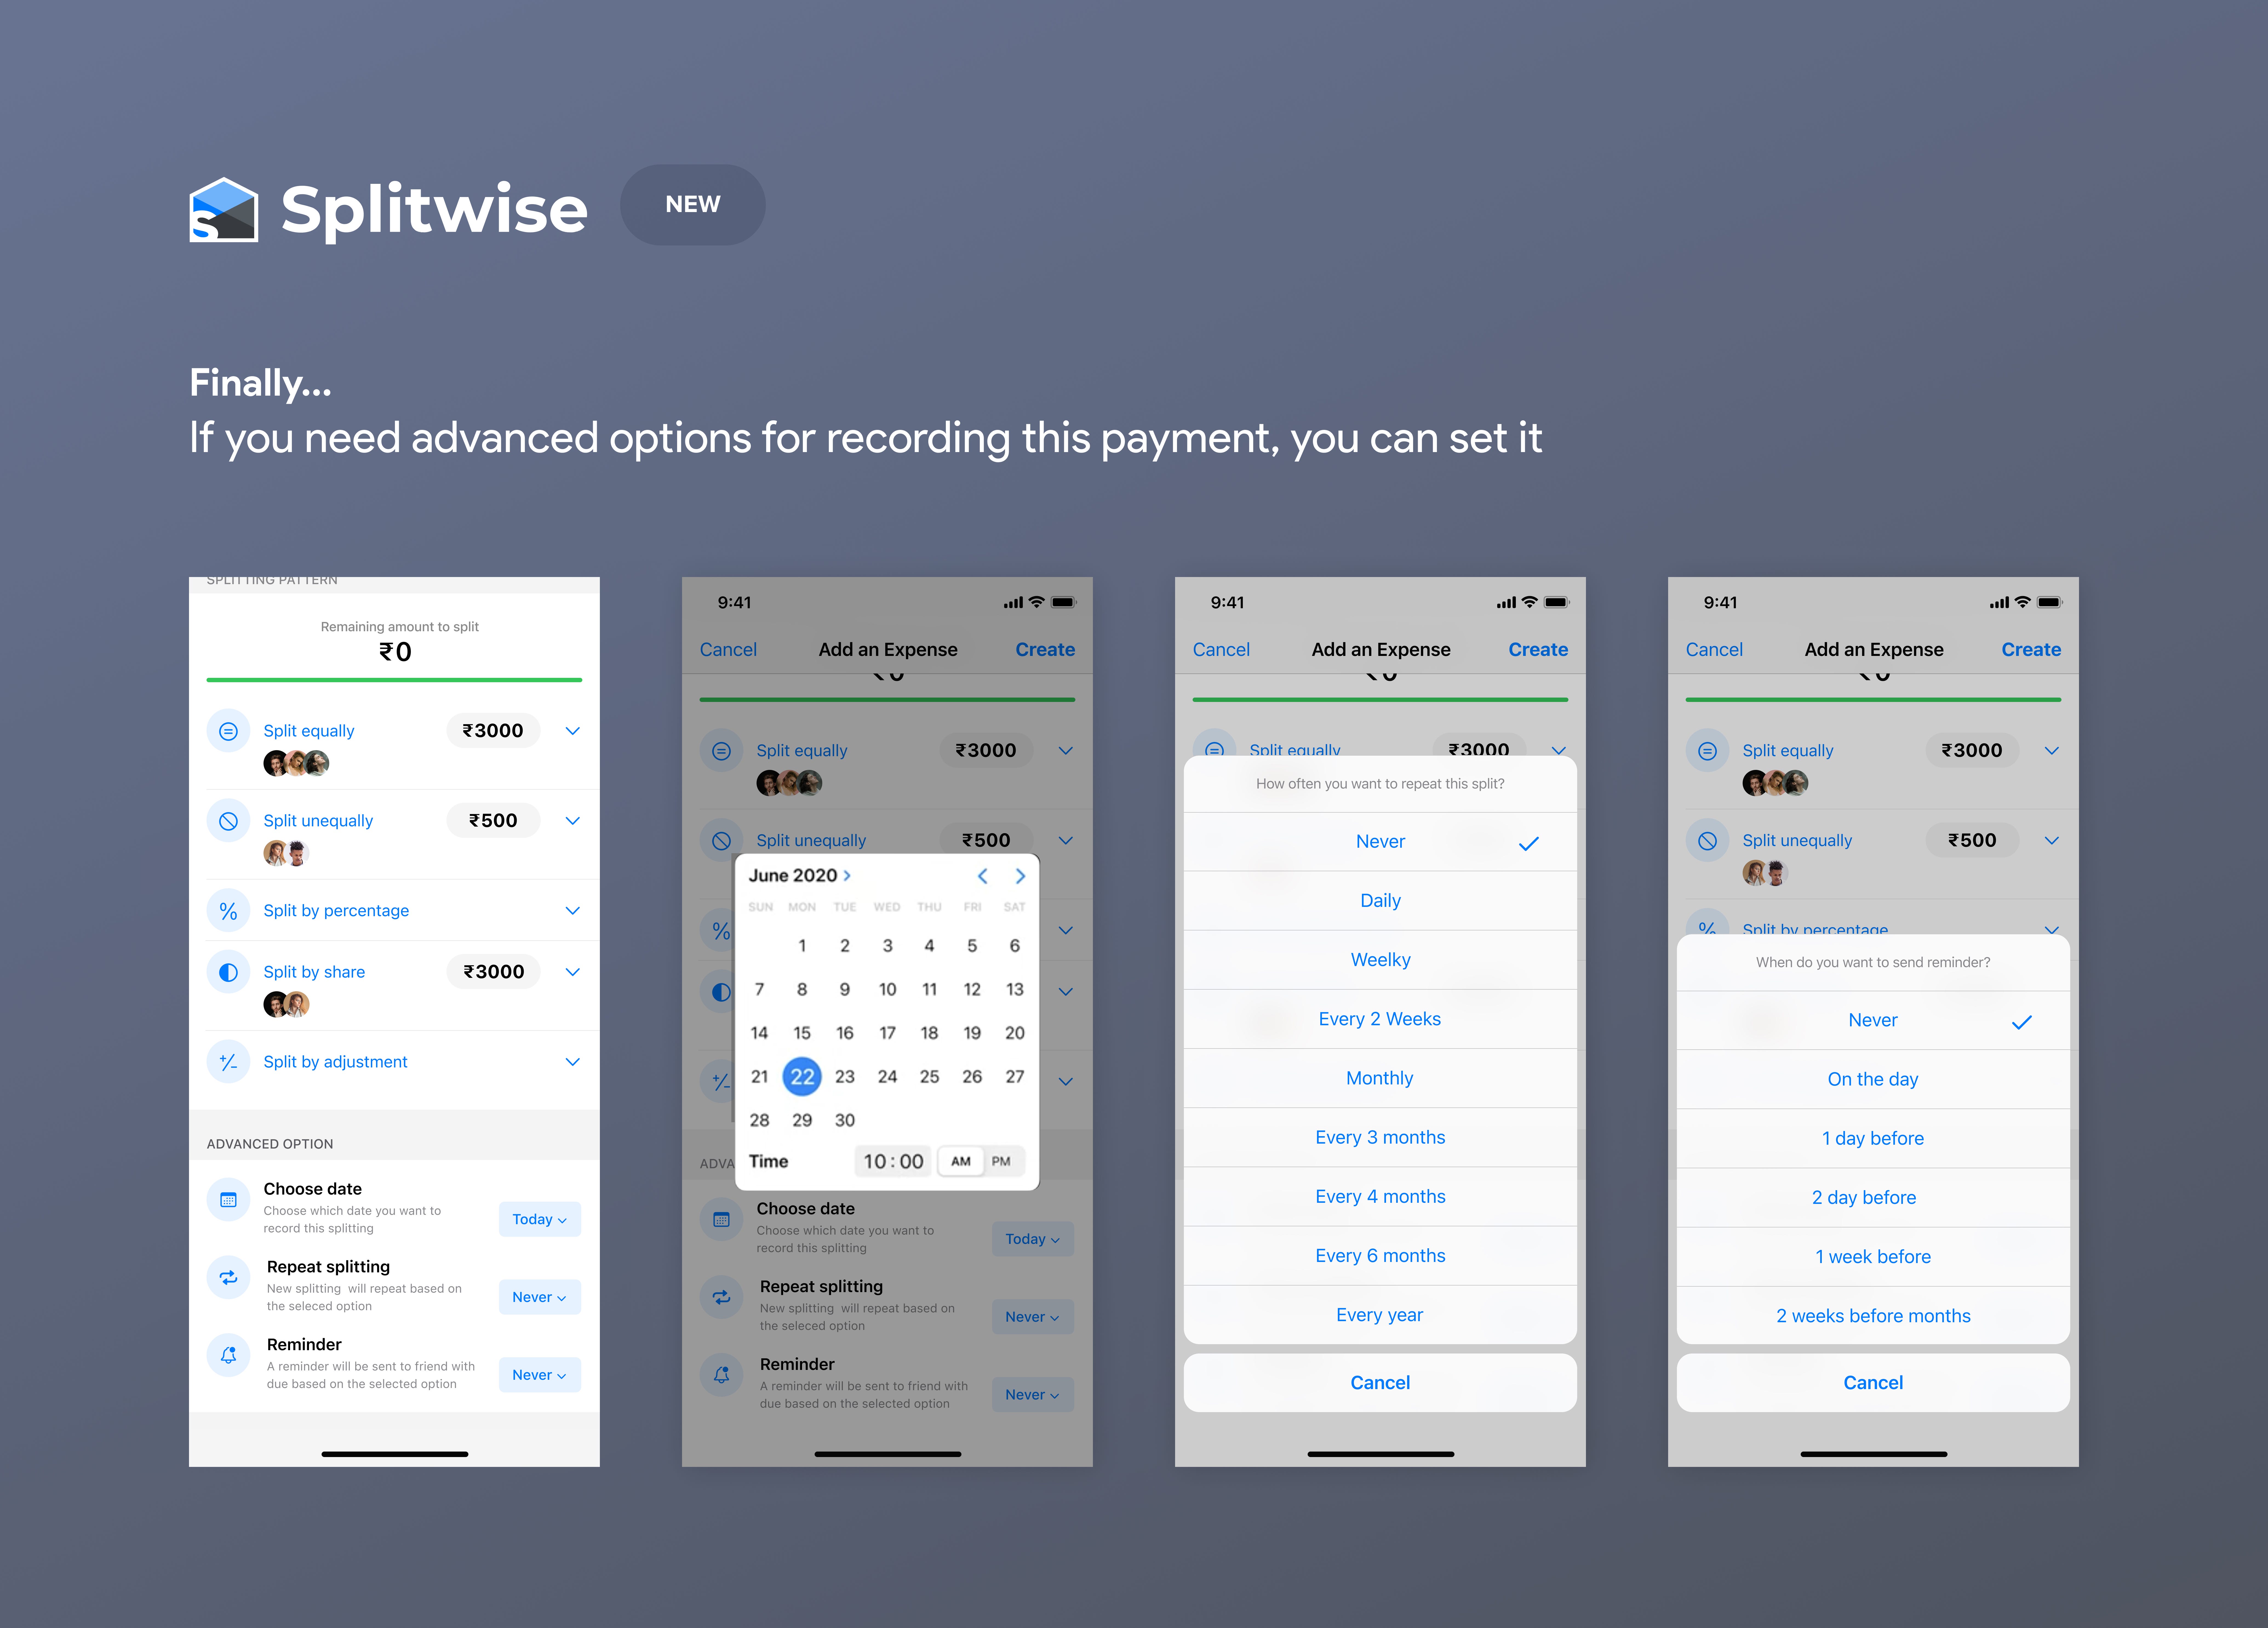 Splitwise: App of the Week - Best Roommates IOU Management App